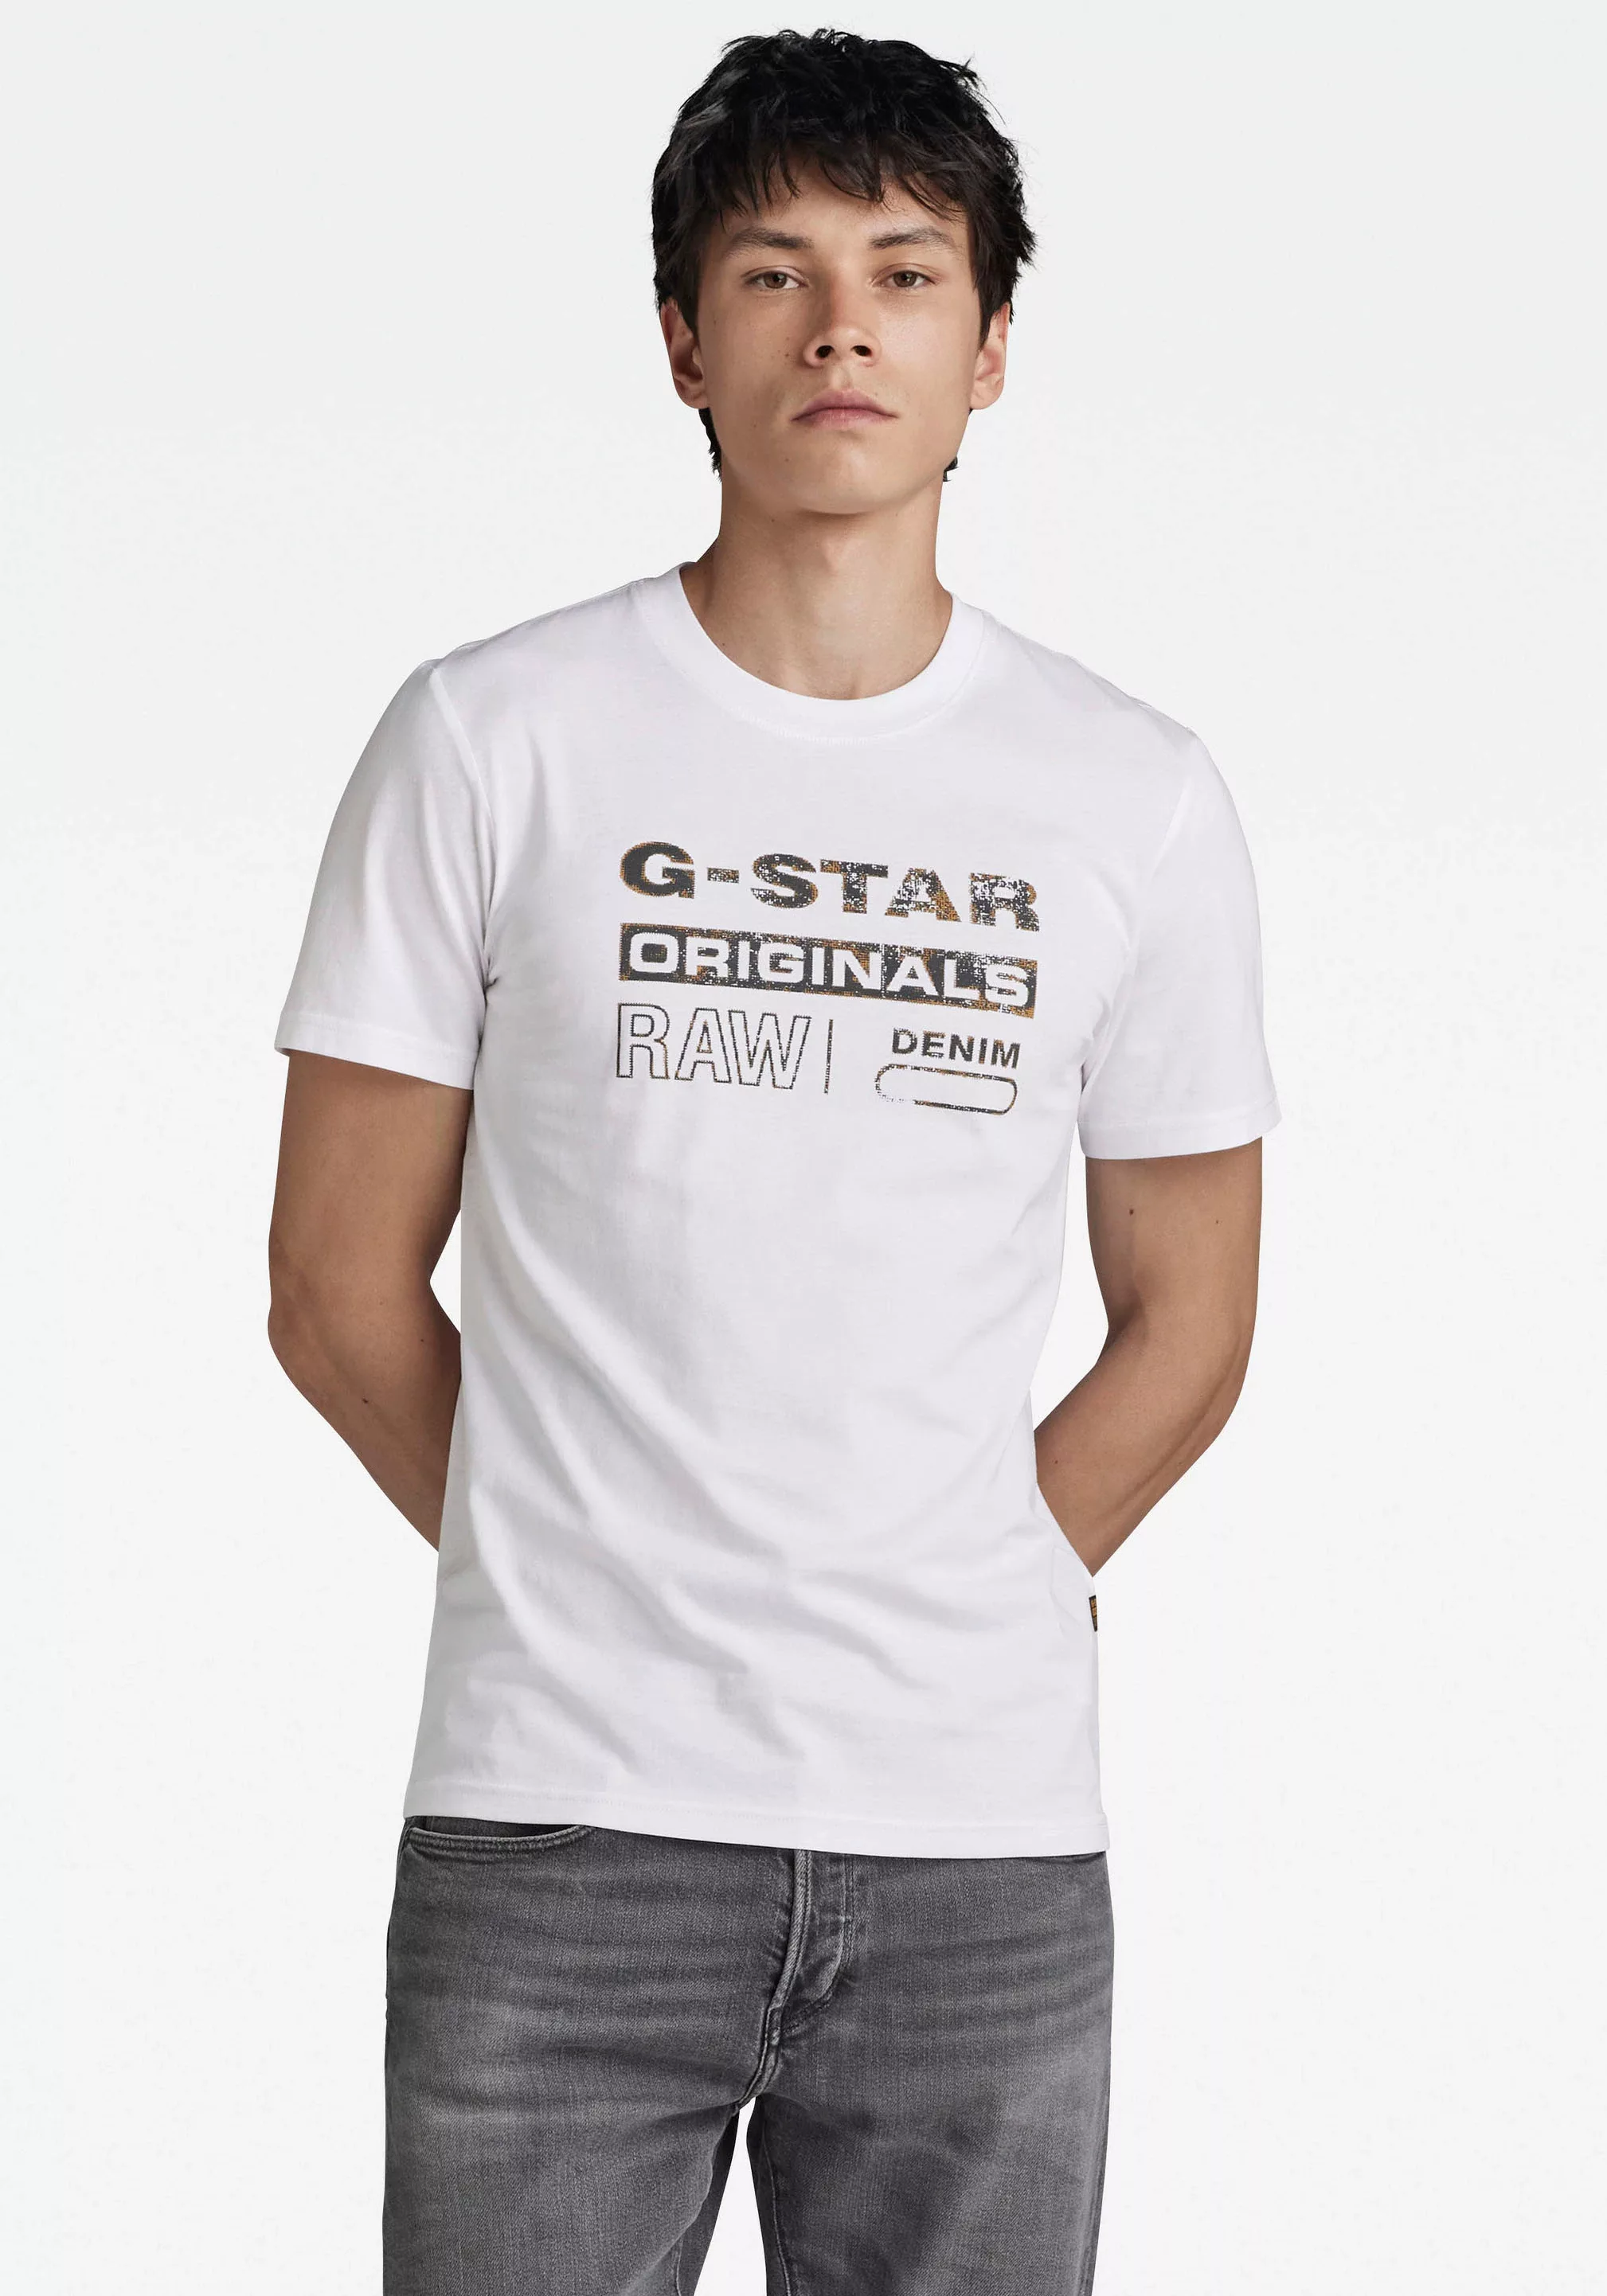 G-Star RAW T-Shirt "Distressed originals" günstig online kaufen